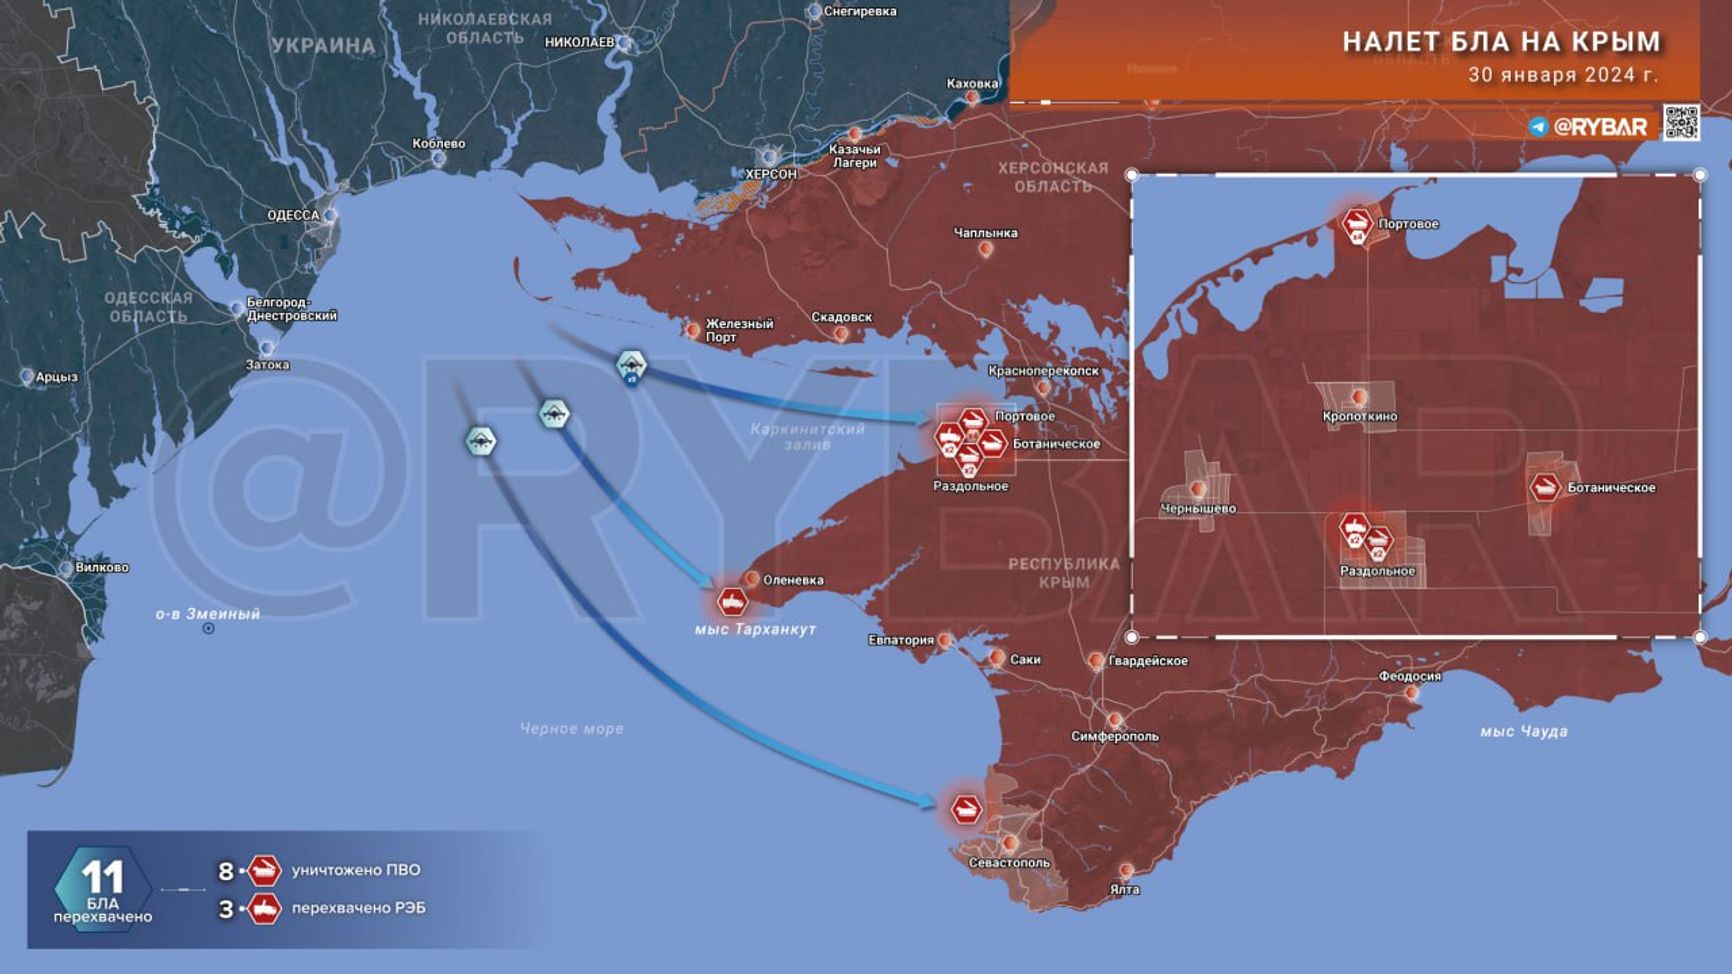 Схема налета беспилотников на Крым по версии «Рыбаря»